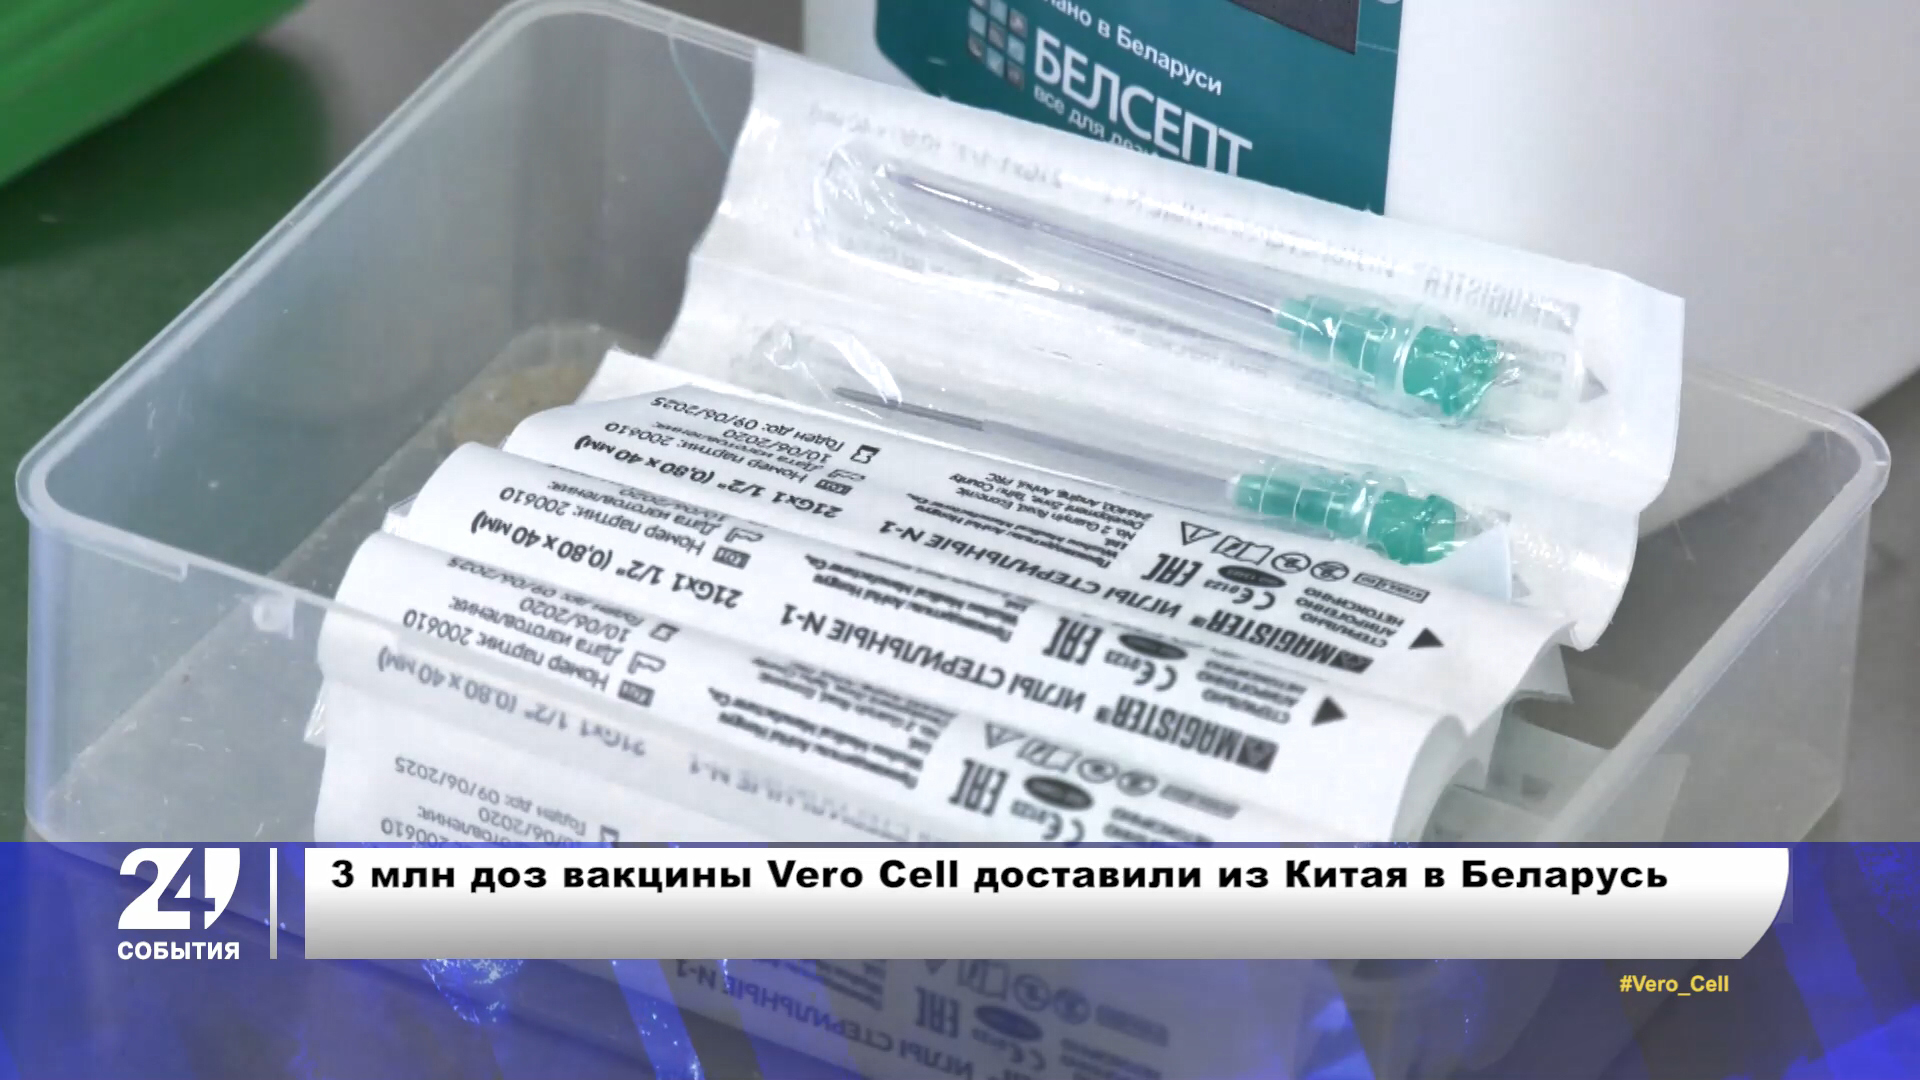 Поставки китайской вакцины Vero Cell в Беларусь